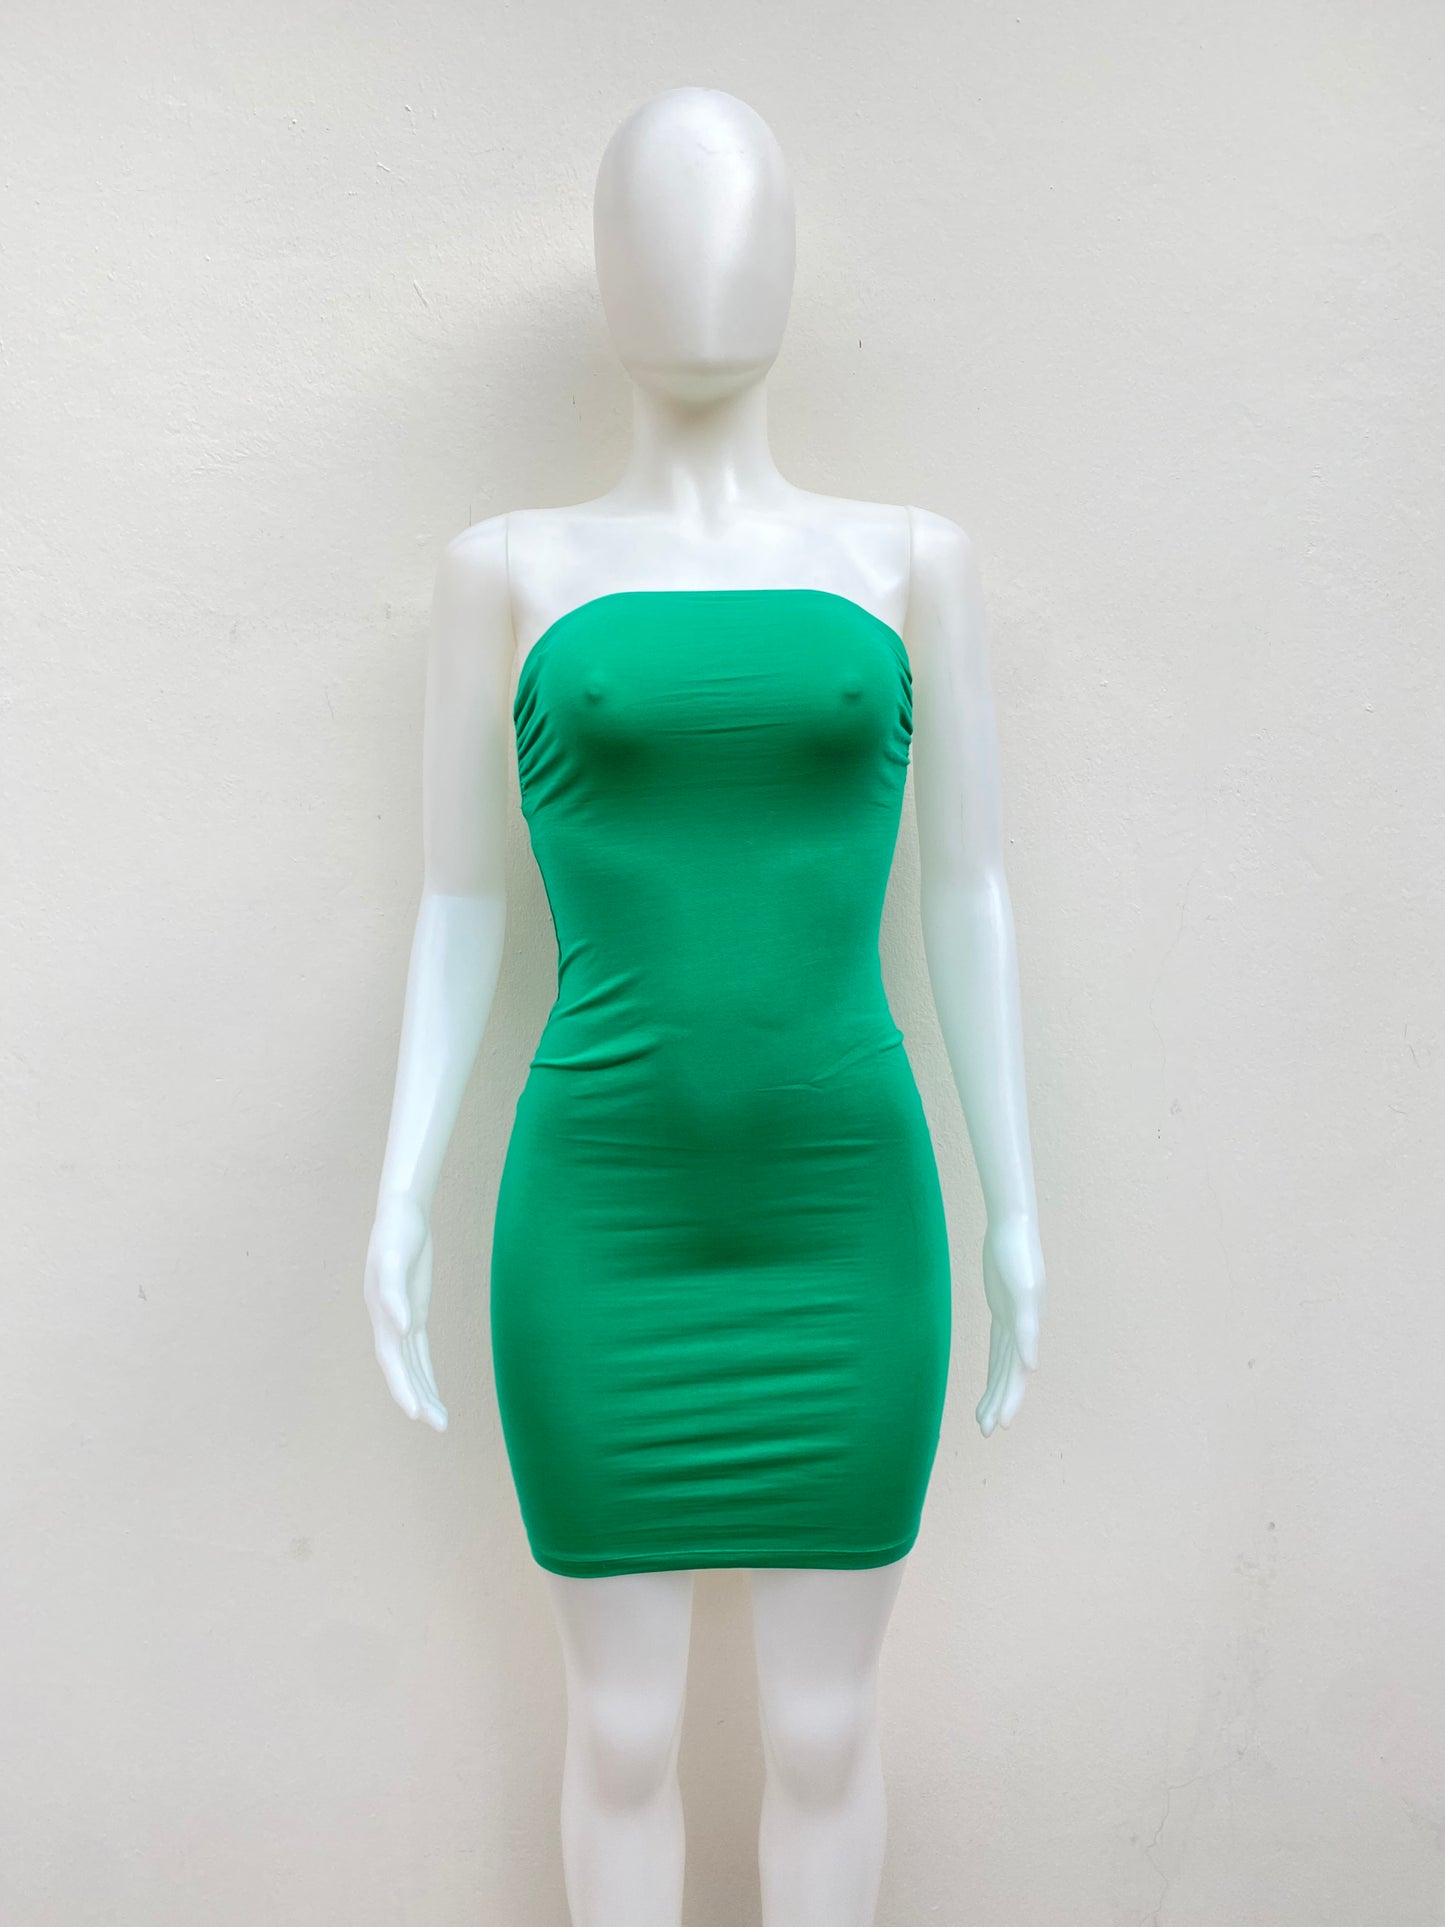 Vestido Strapless Fashion Nova original, verde con elástico debajo de los brazos.